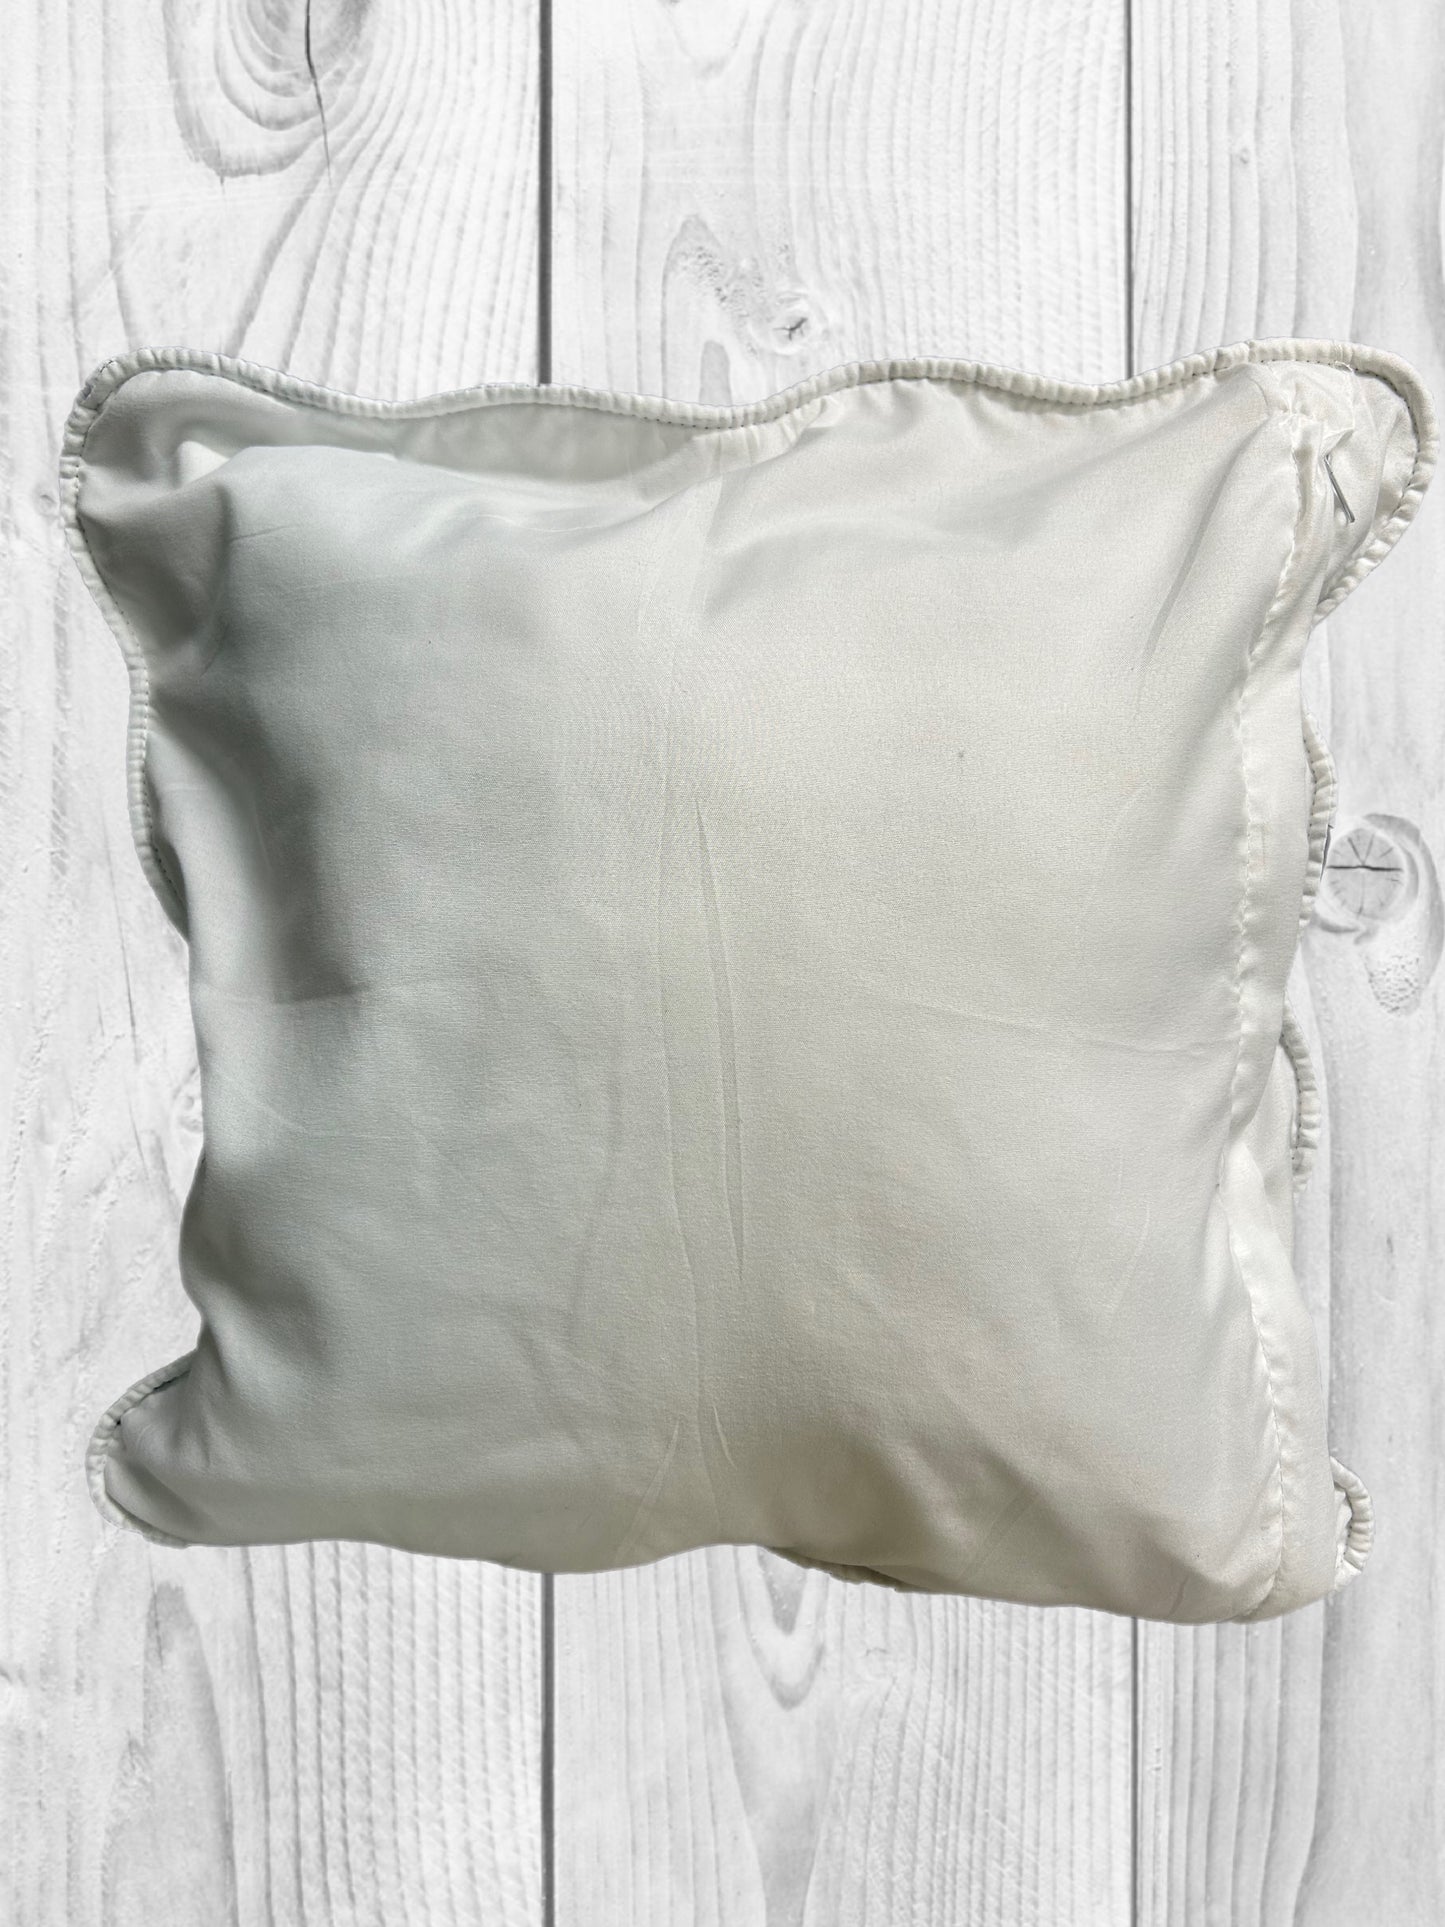 Calf Pillows